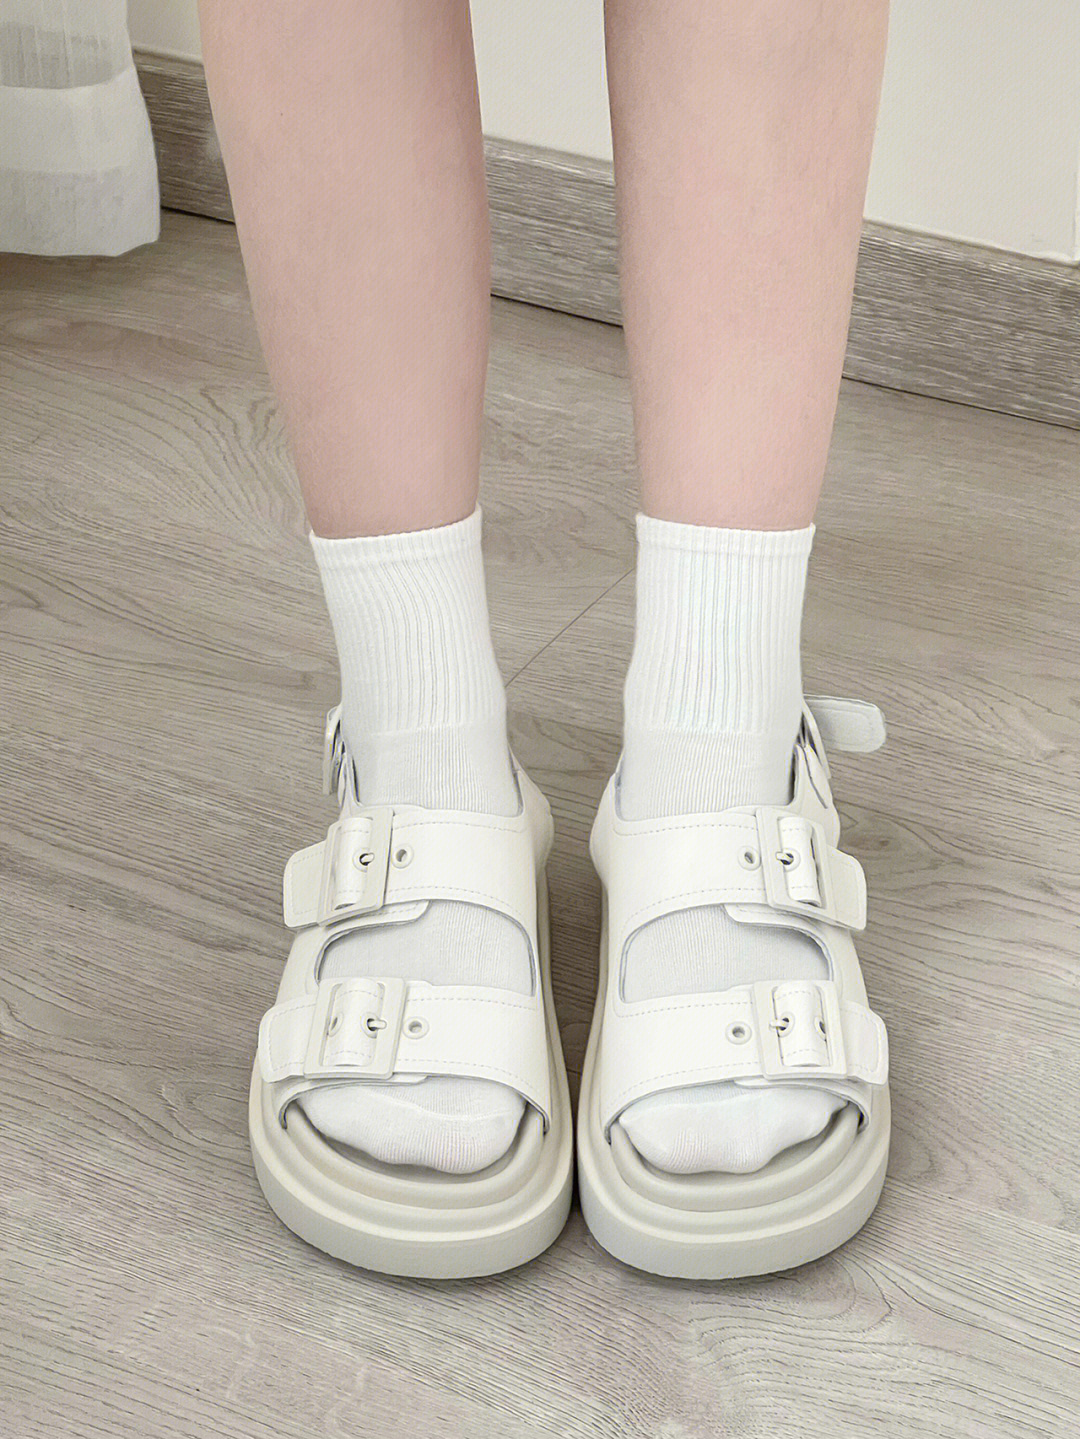 白袜女孩 凉鞋图片